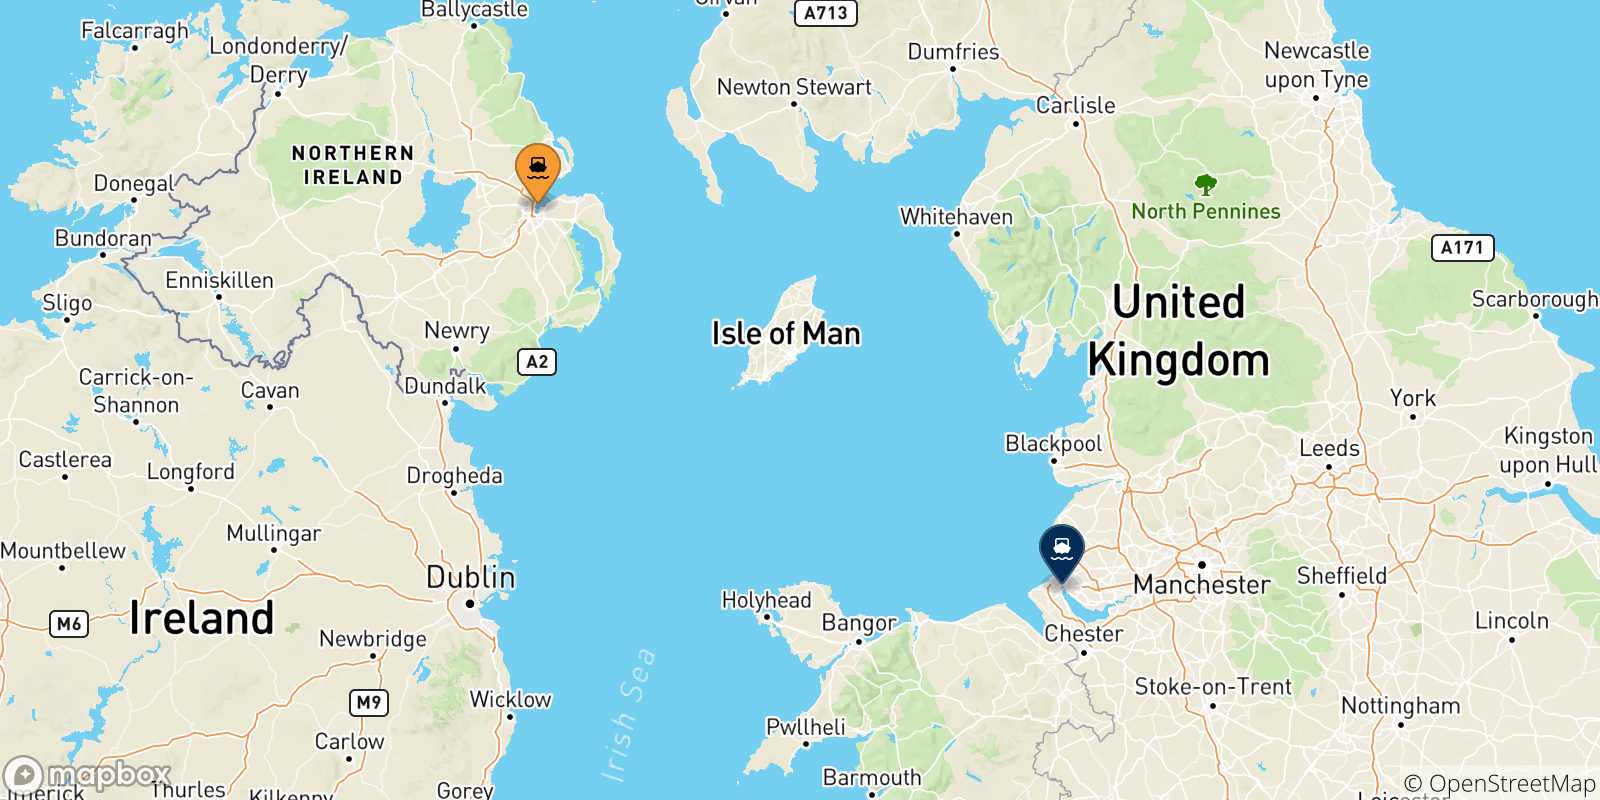 Mappa delle possibili rotte tra l'Irlanda Del Nord e l'Inghilterra